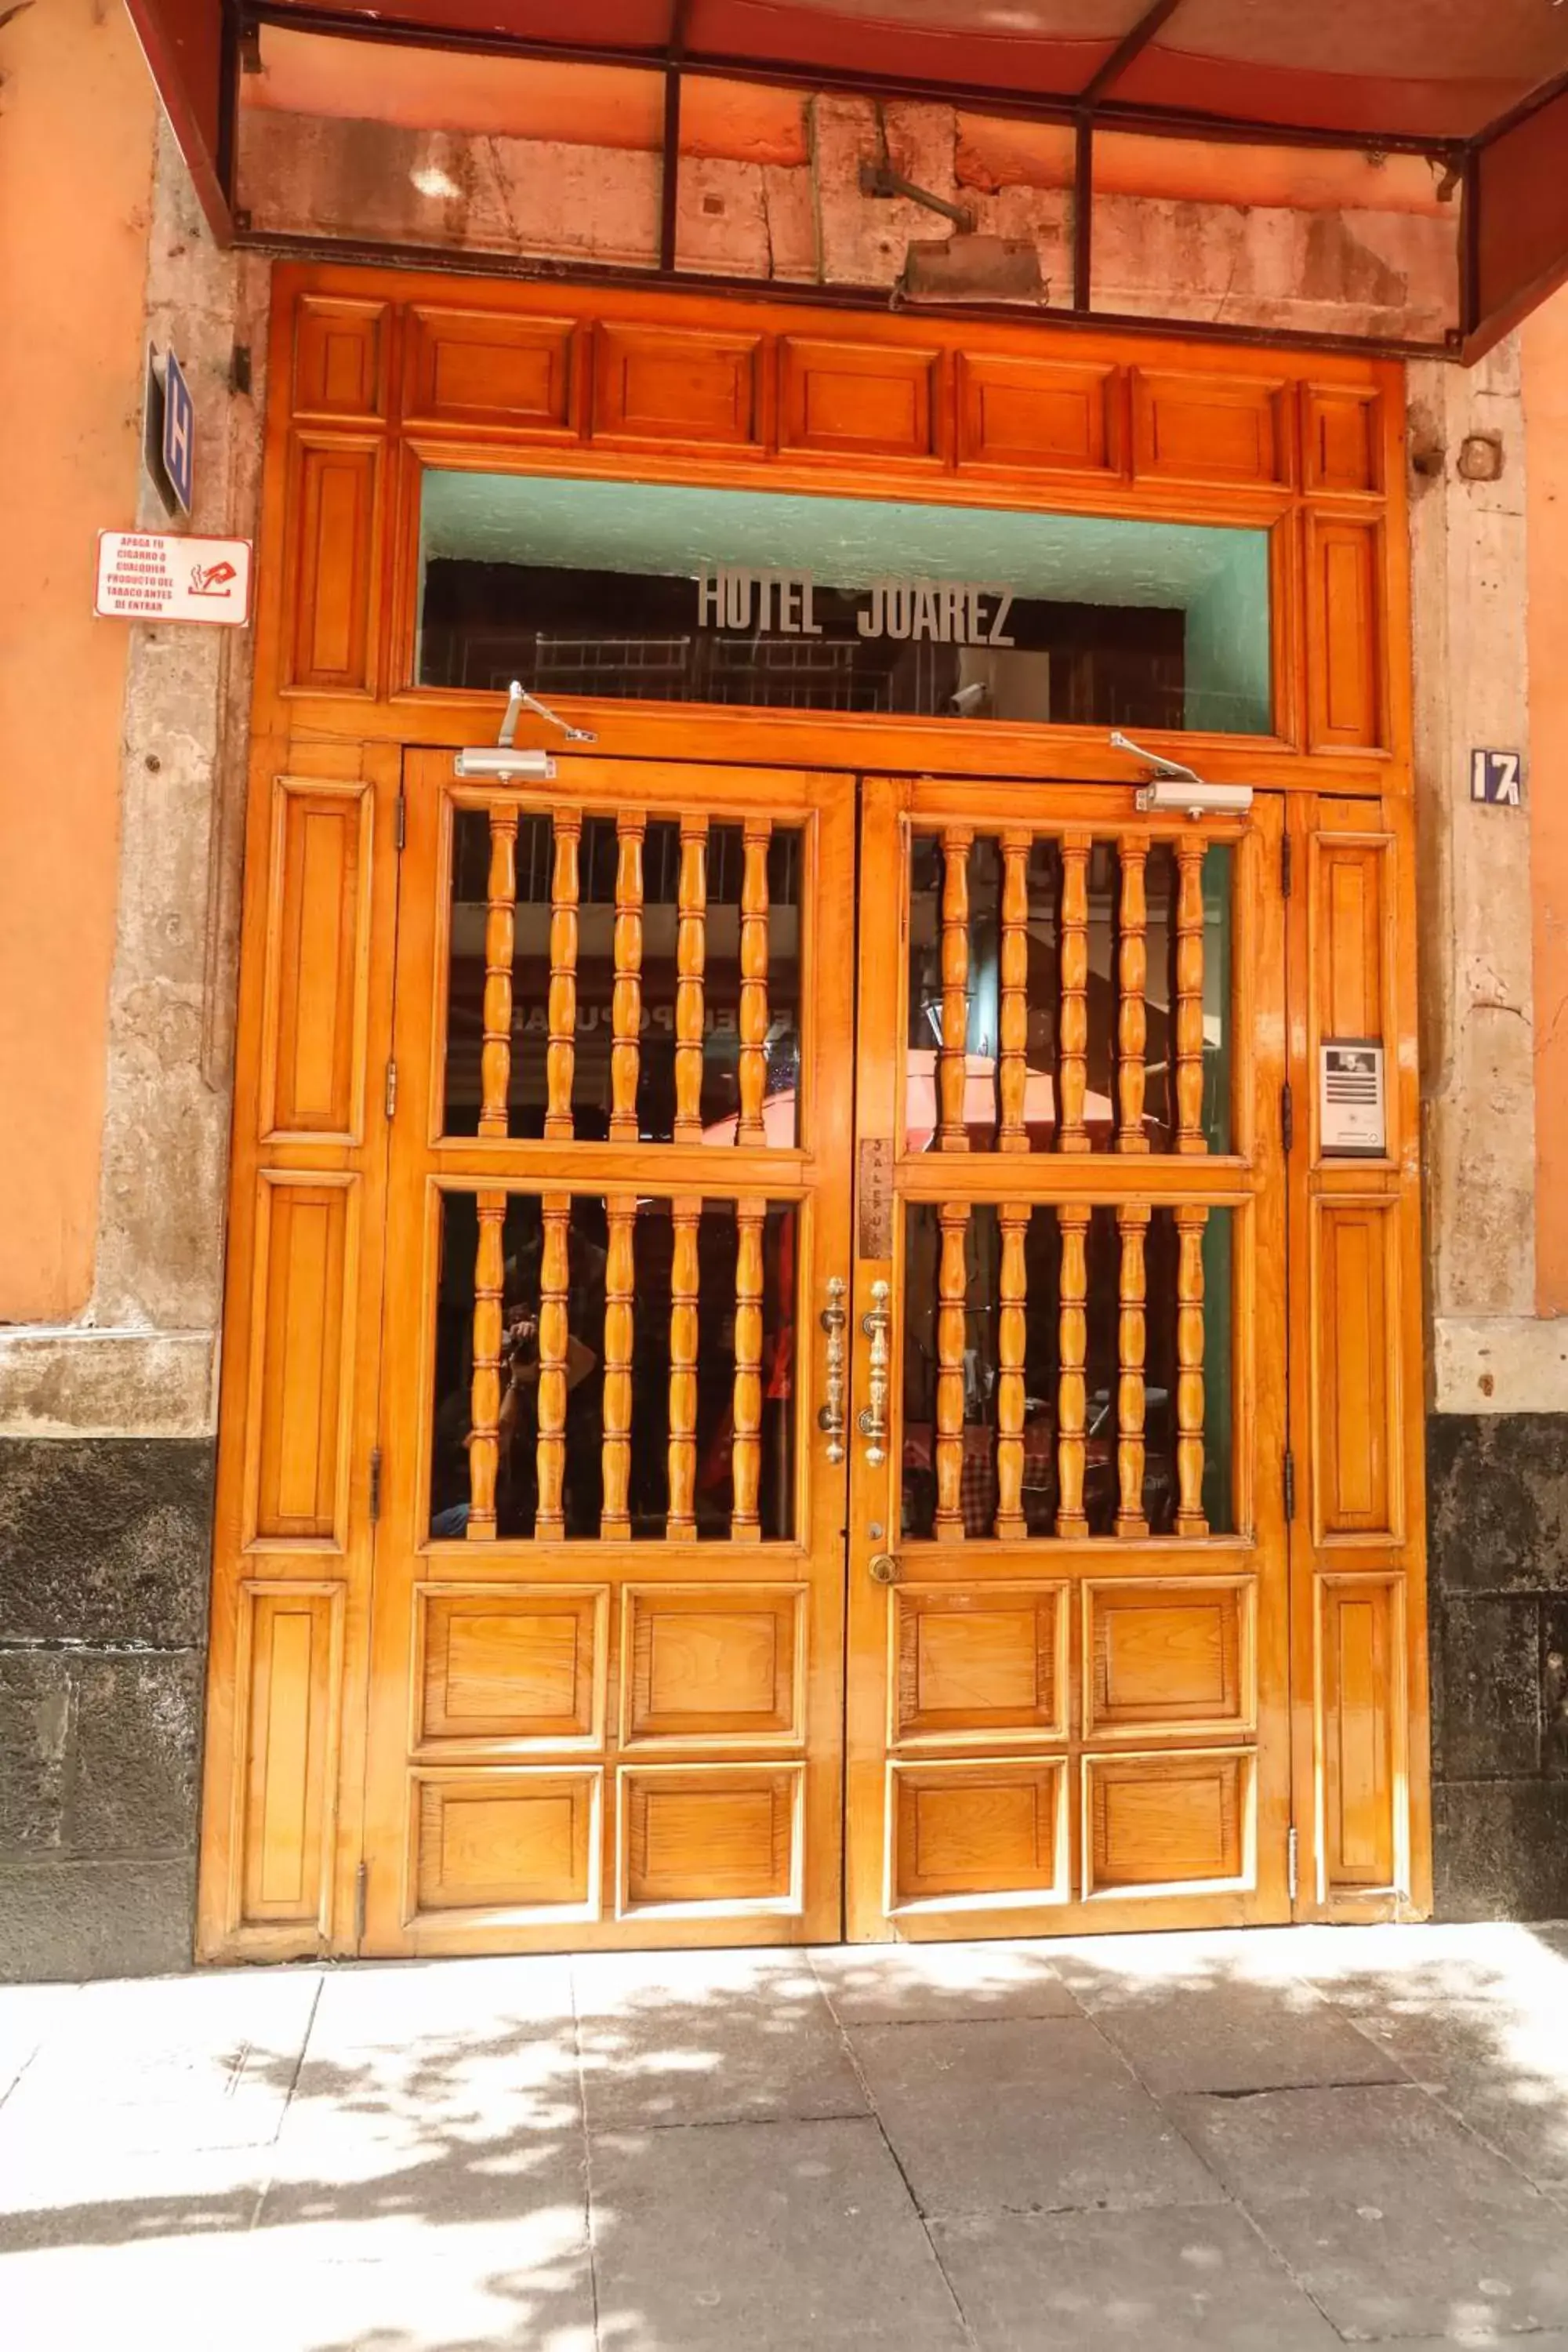 Facade/entrance in Hotel Juarez